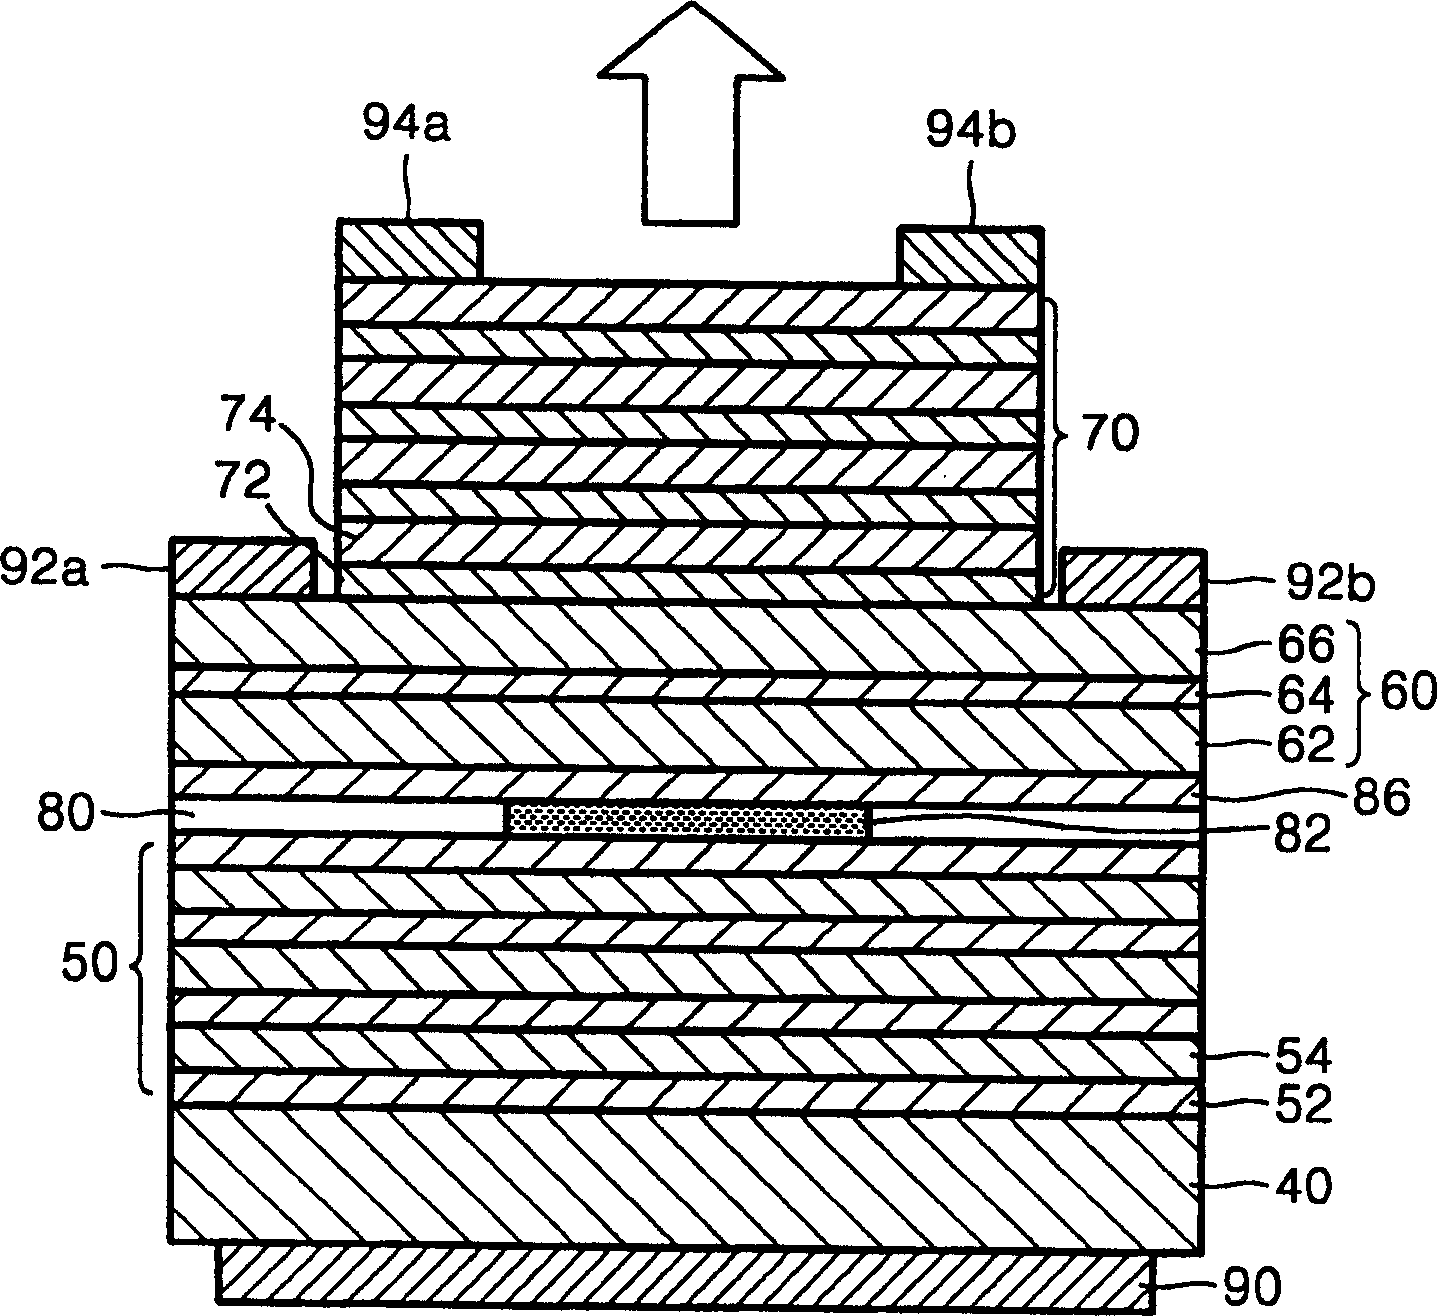 Wave length adjustable vertical cavity surface emitting laser diode